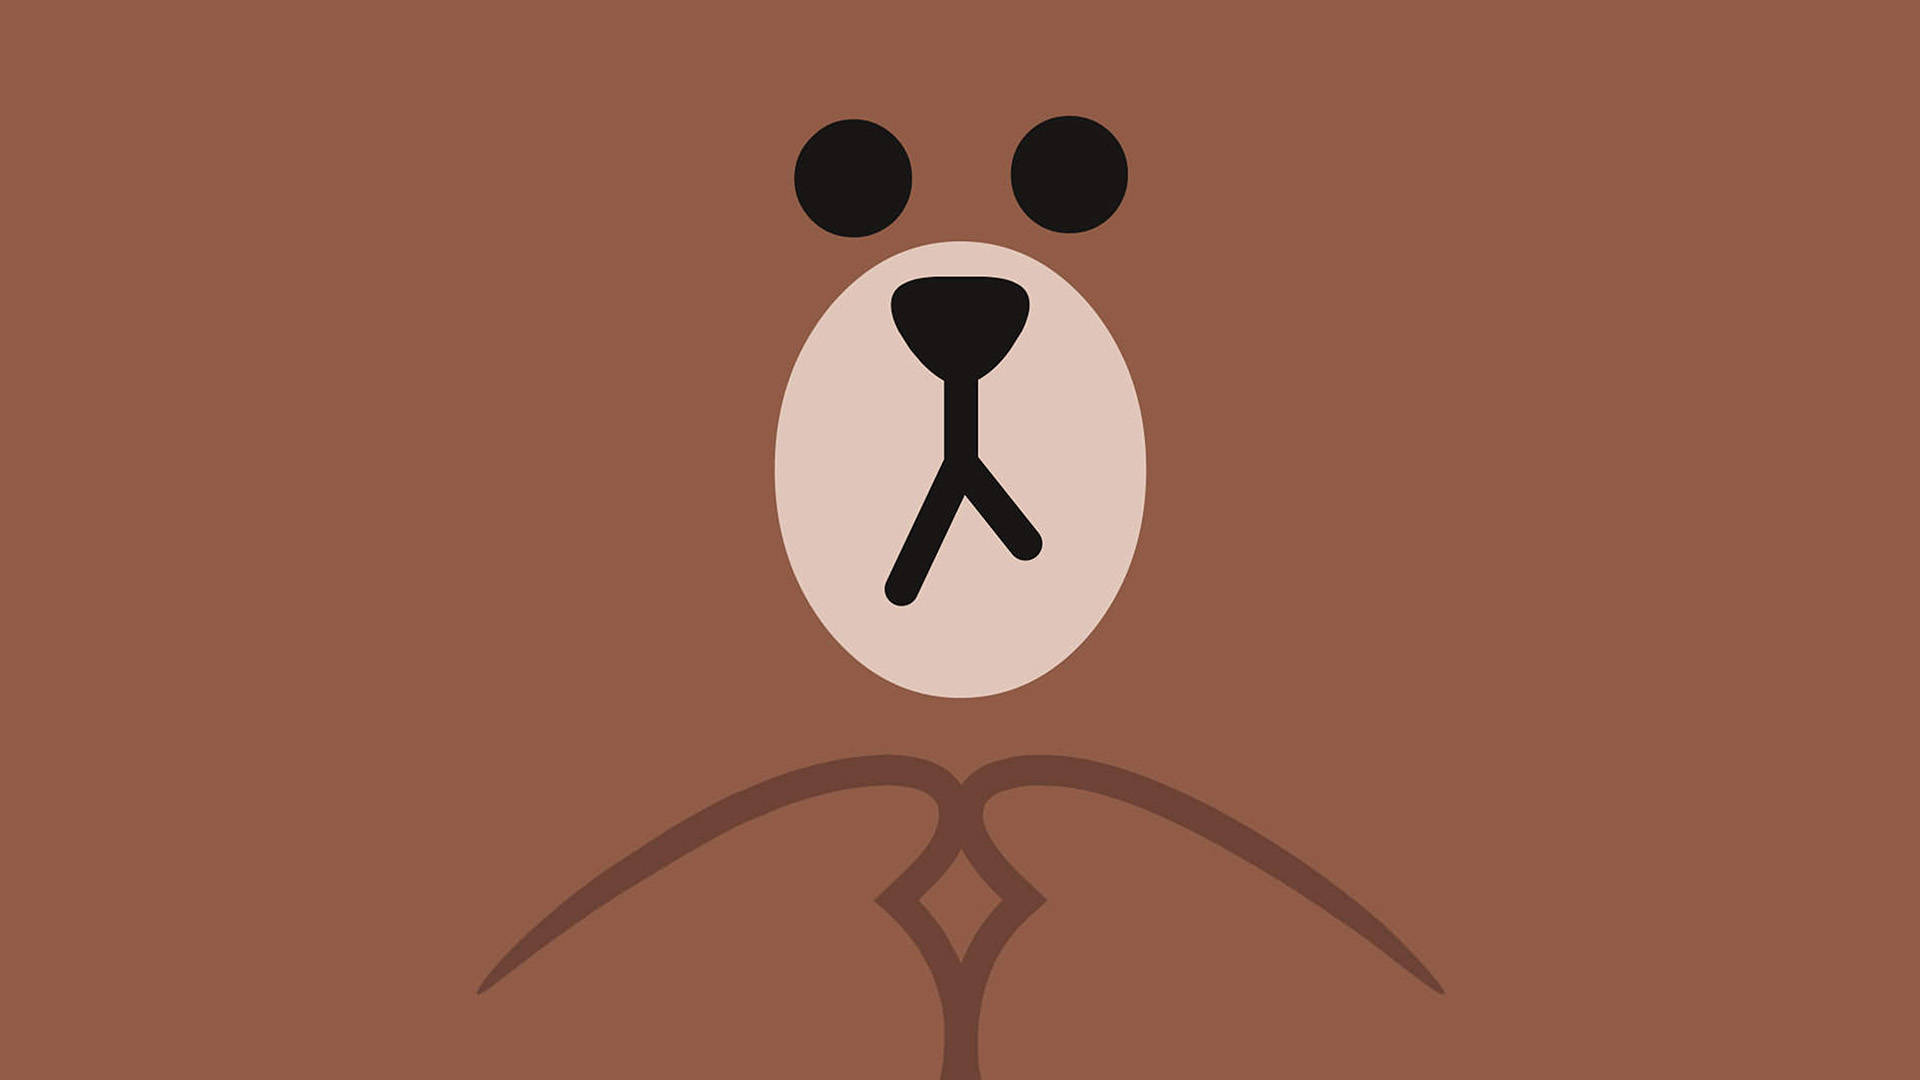 Brown Bear Aesthetic   Boneka binatang Ilustrasi karakter Boneka hewan